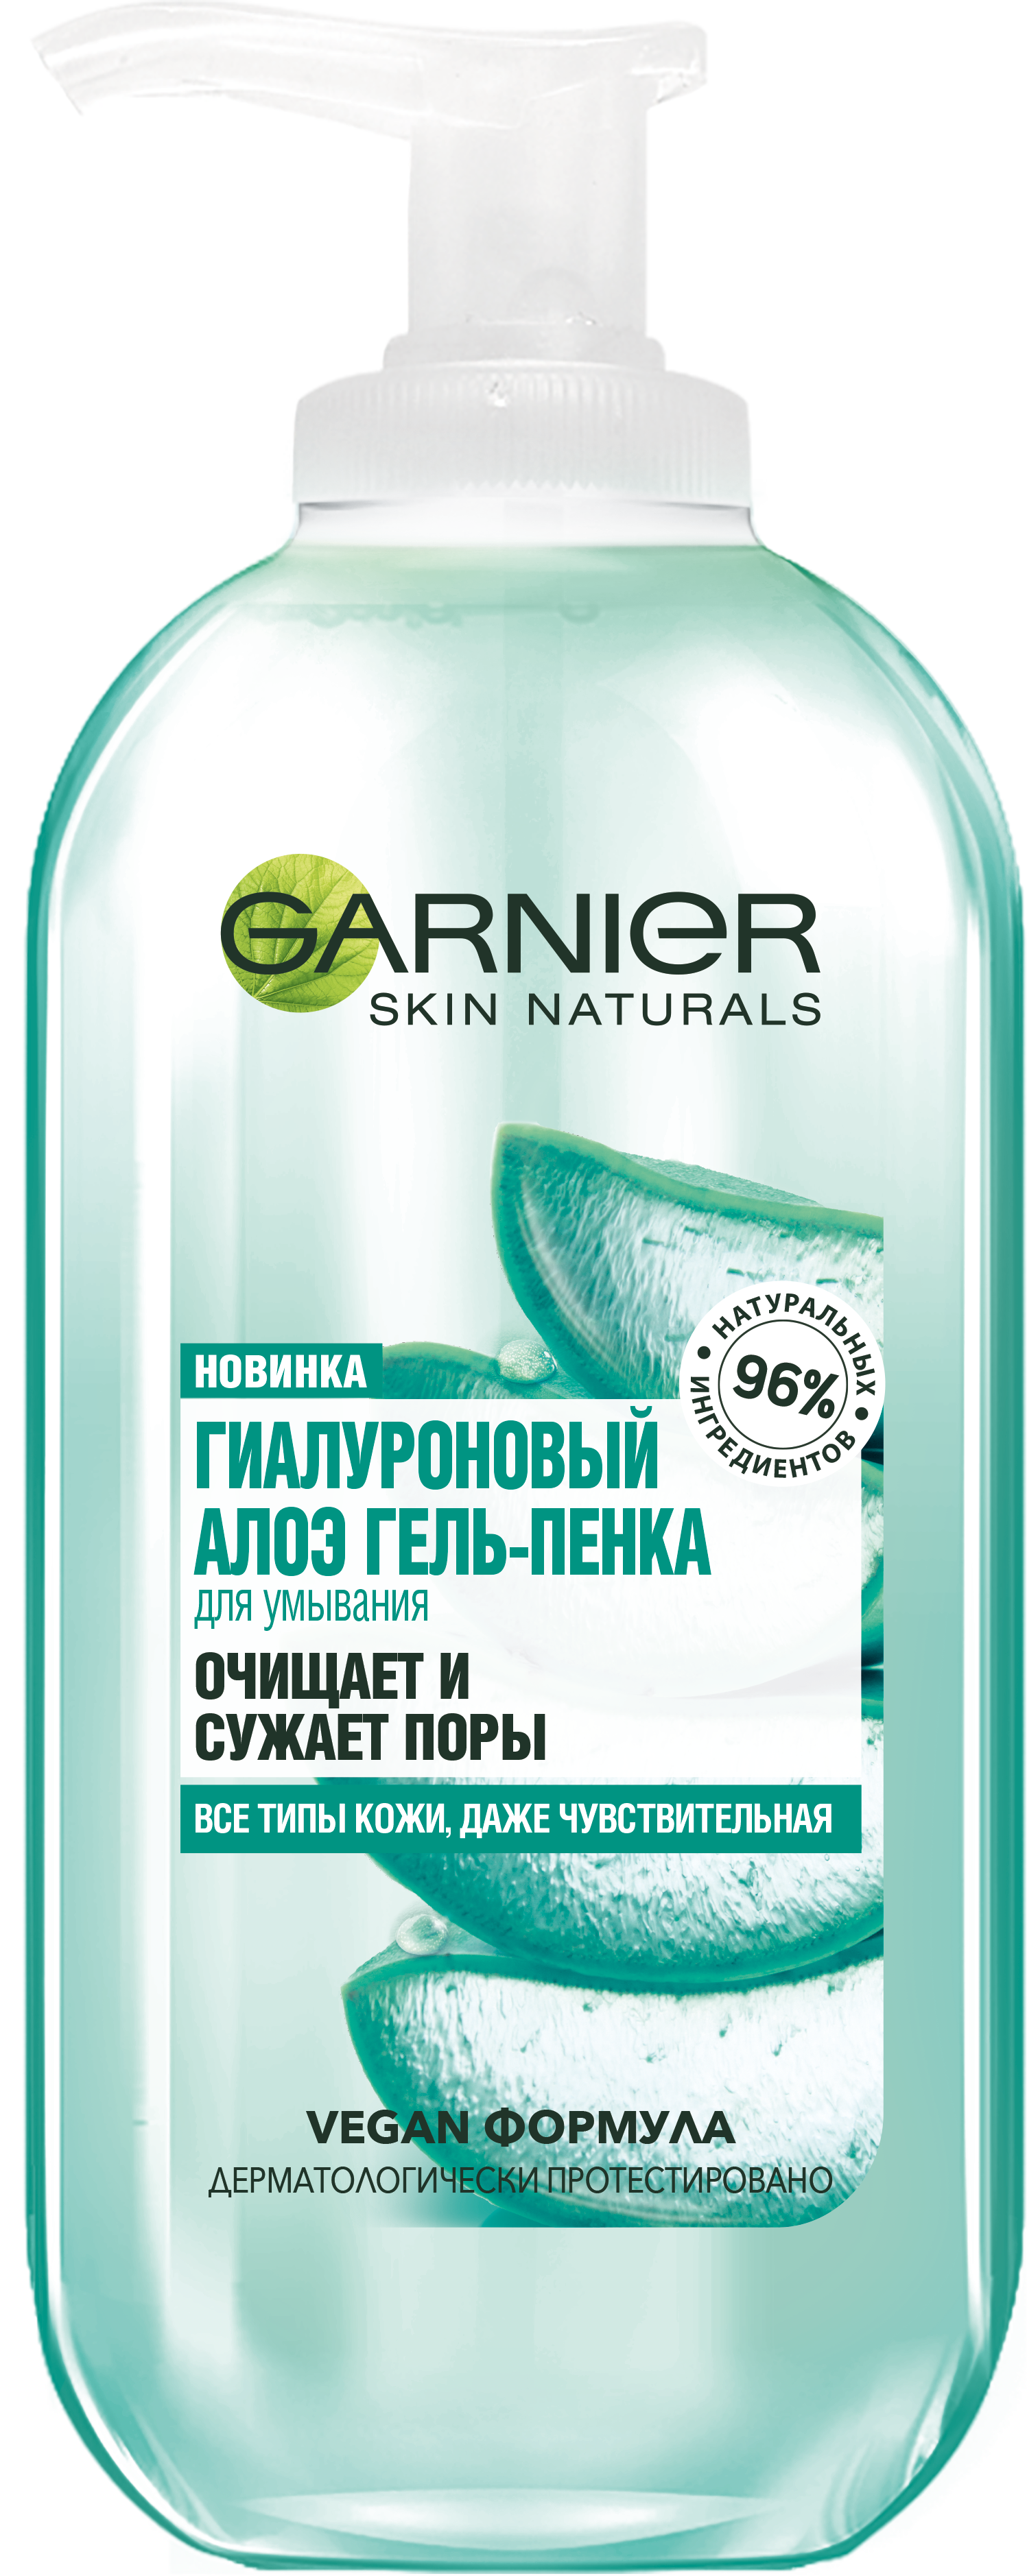 Гиалуроновый алоэ-гель для умывания Garnier Skin Naturals, 200 мл (C6395300) - фото 1